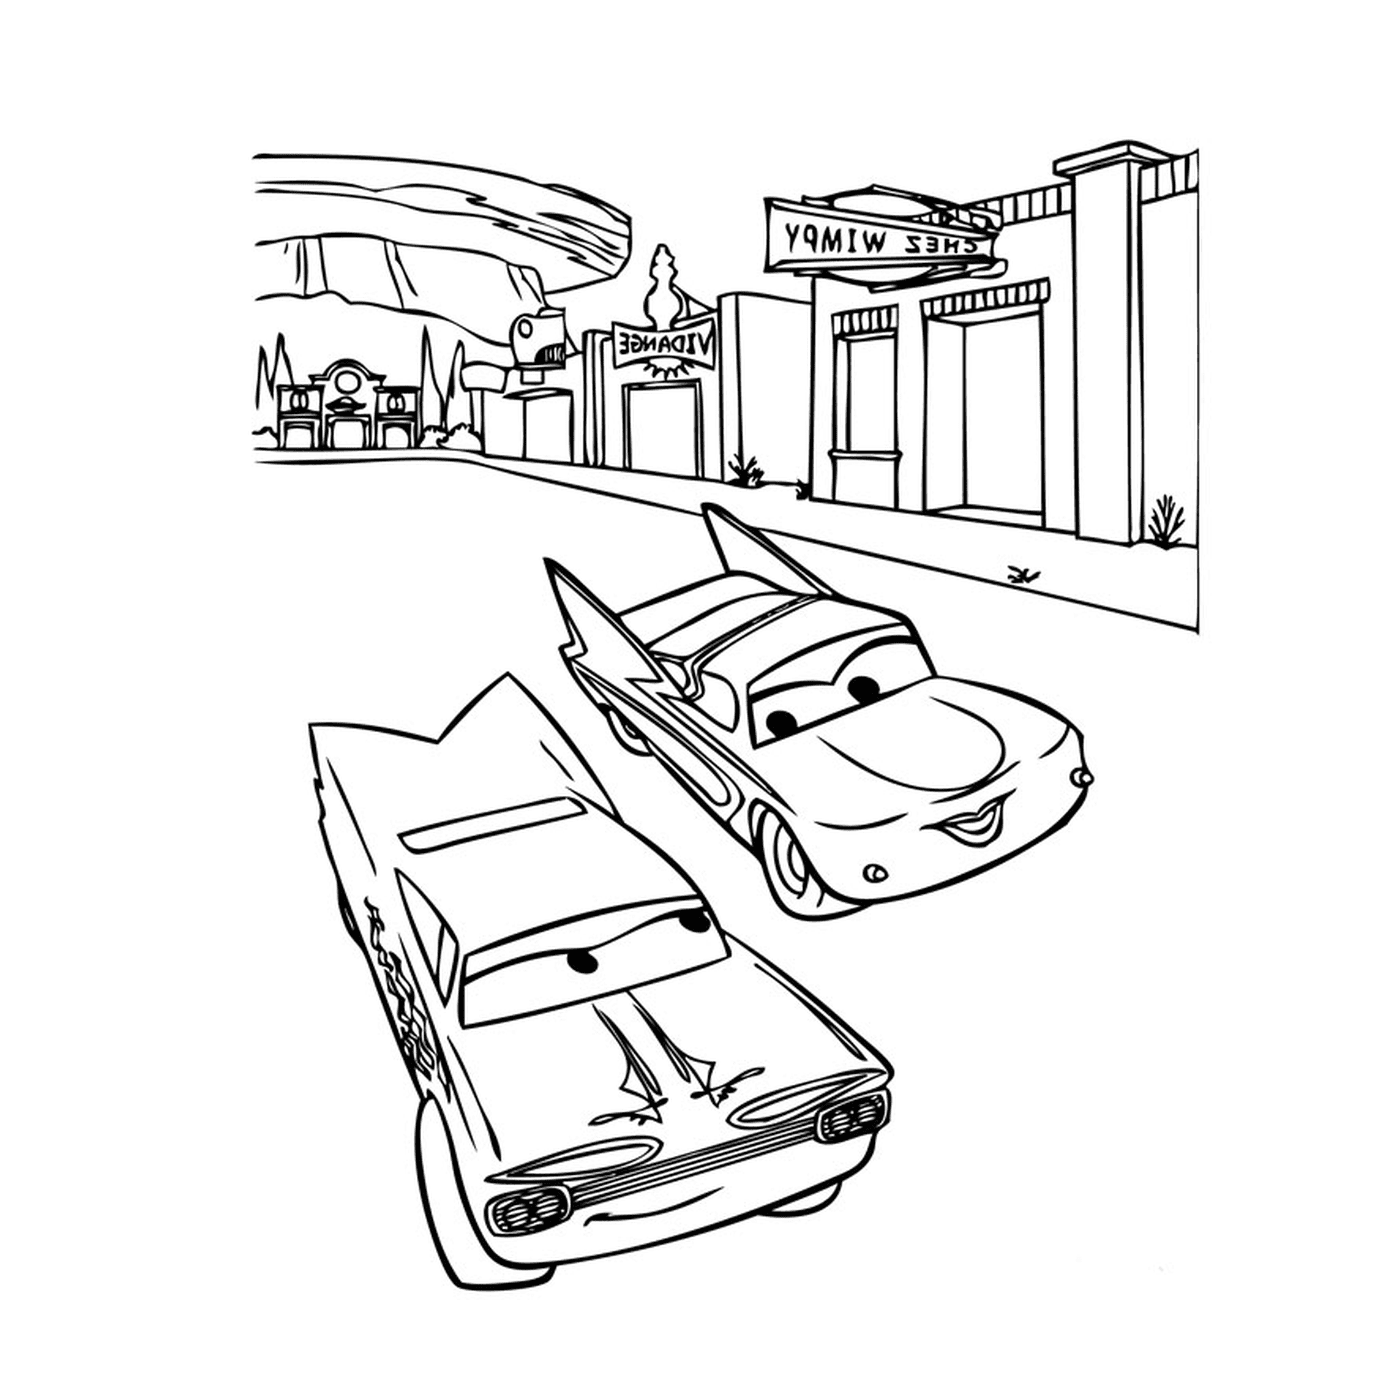  السيارات في الشارع 